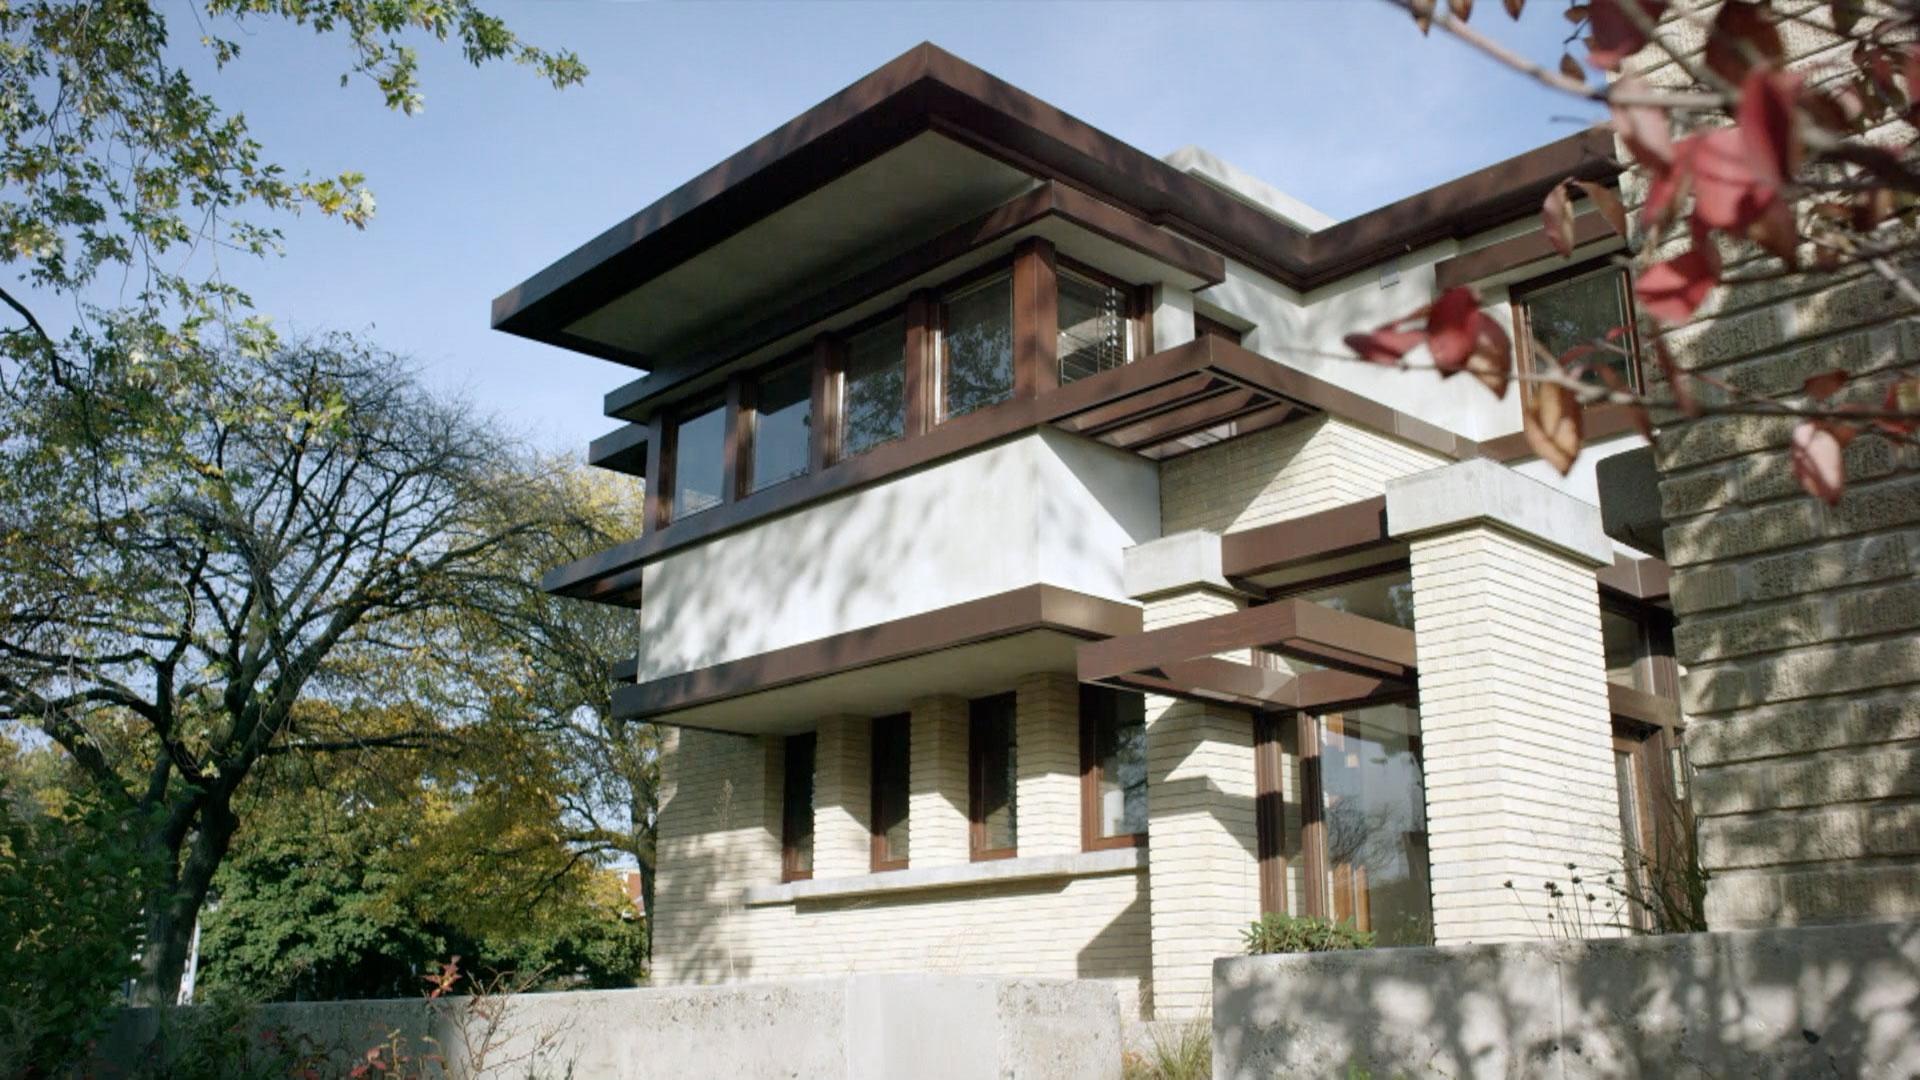 Frank Lloyd Wright's Emil Bach House